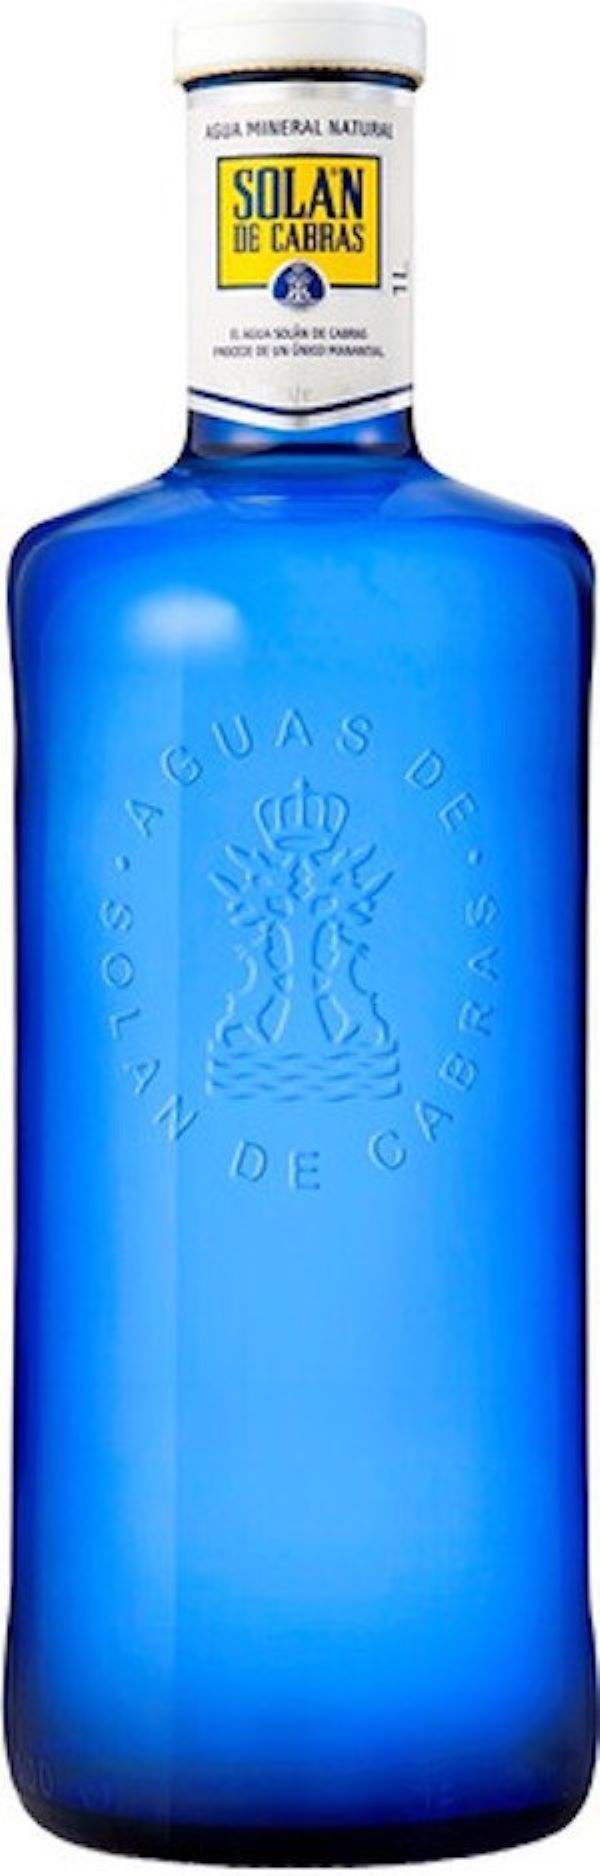 Вода питьевая Solan de Cabras природная, без газа, стекло, 1 л